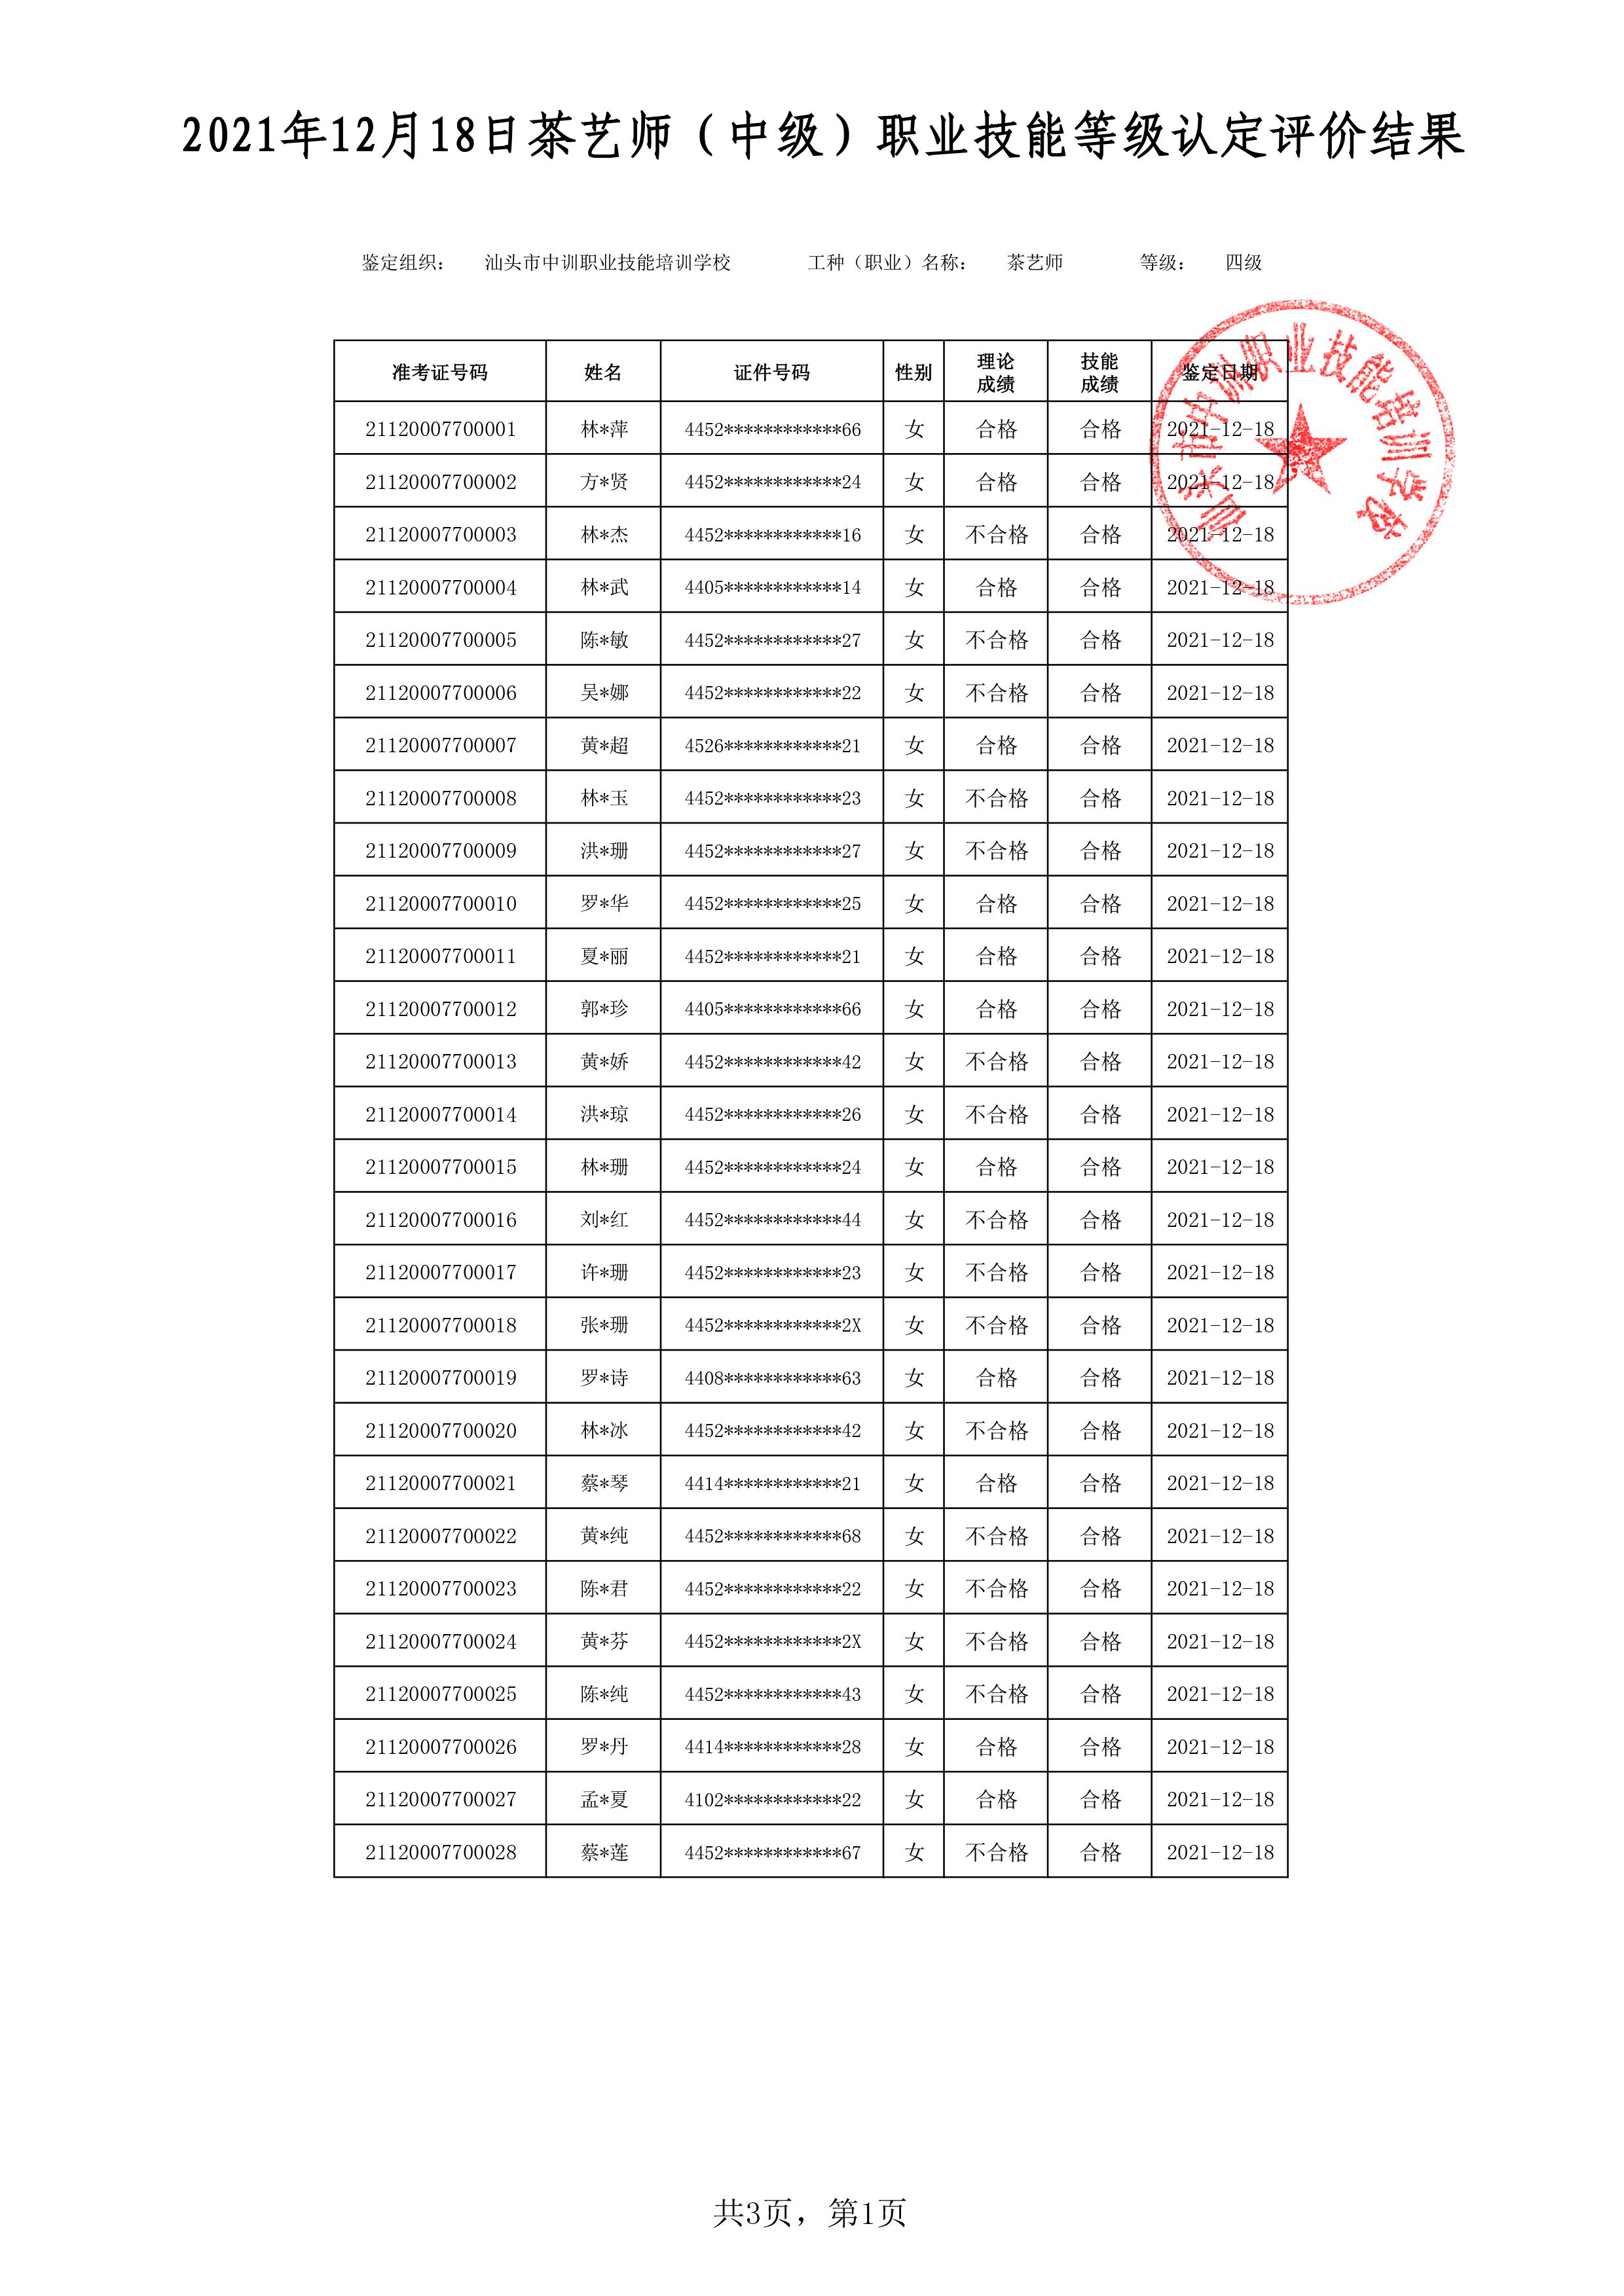 21-12-18四级茶艺师考试鉴定名册表-1 副本.jpg